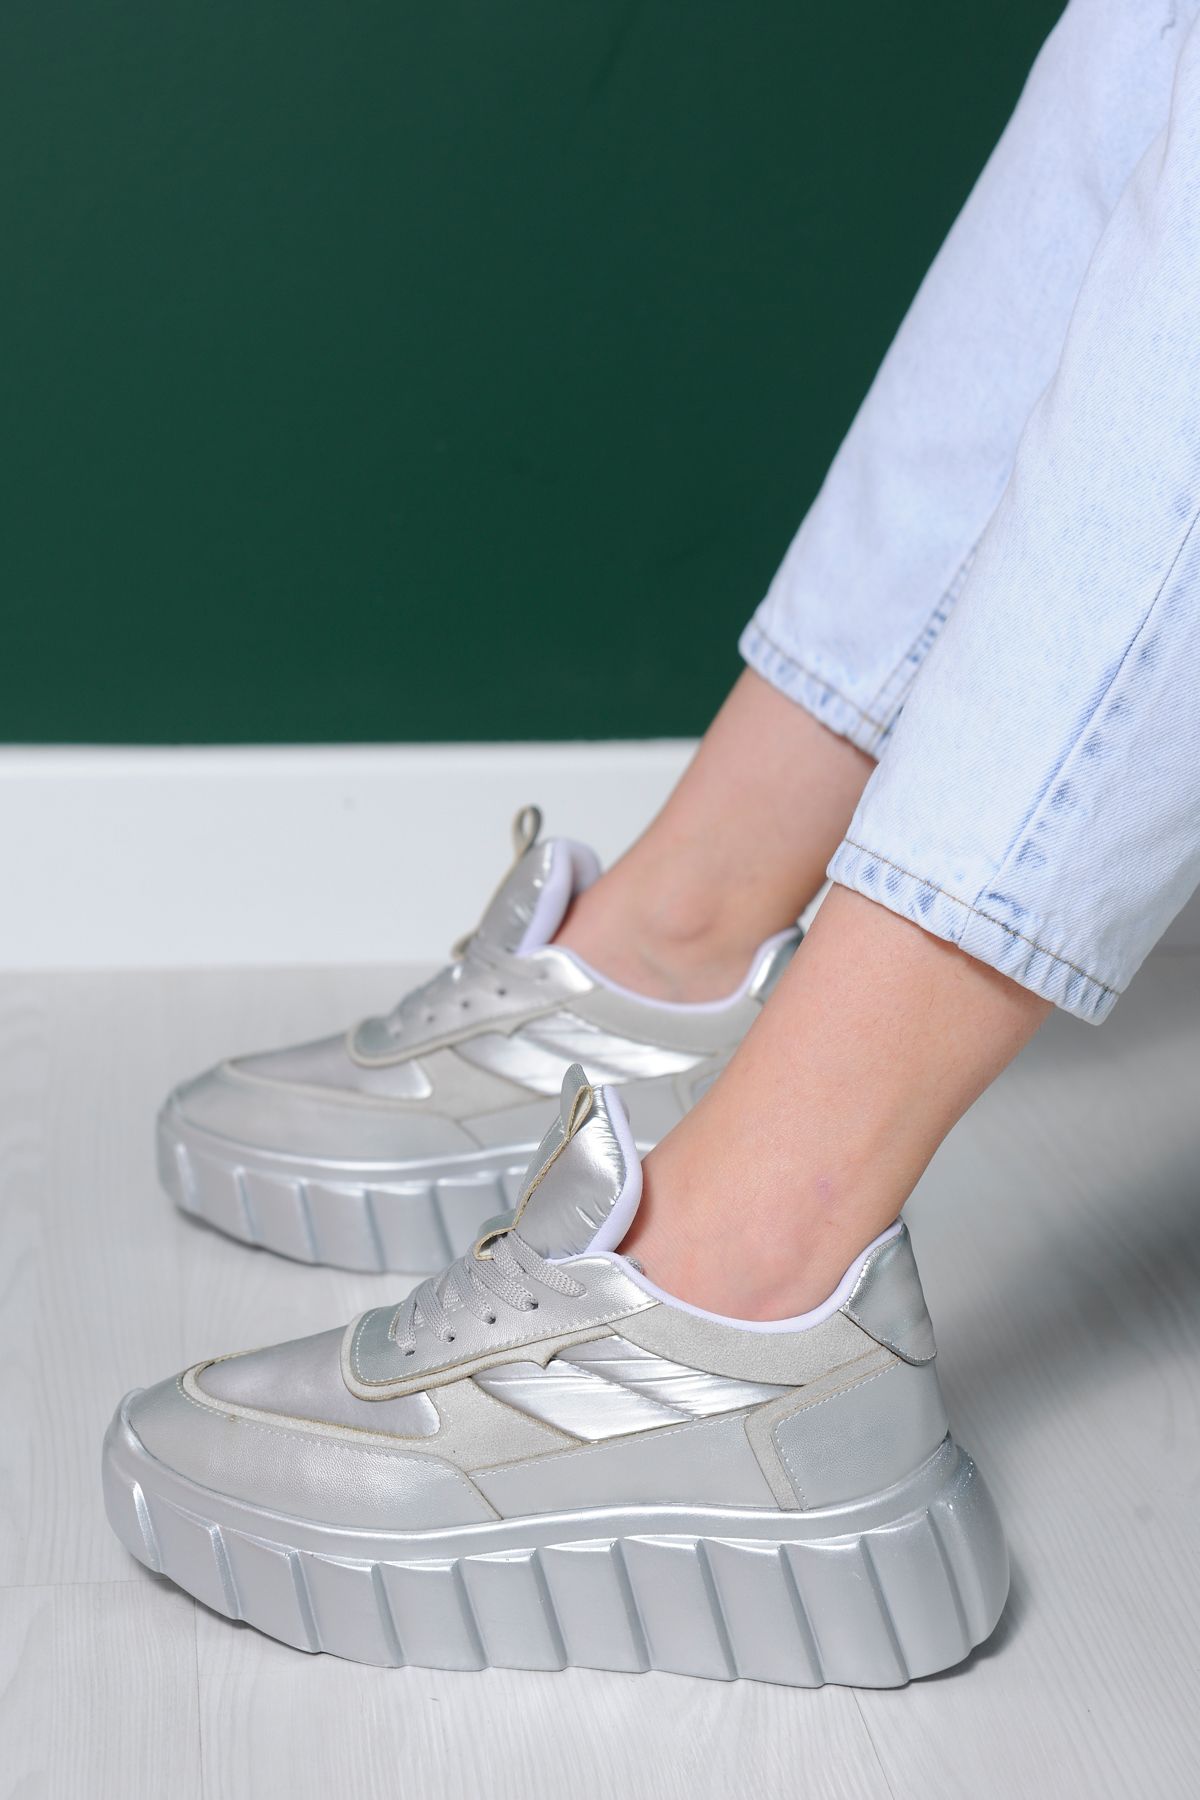 sibel durmaz Elen Gümüş Bağcıklı Sneakers